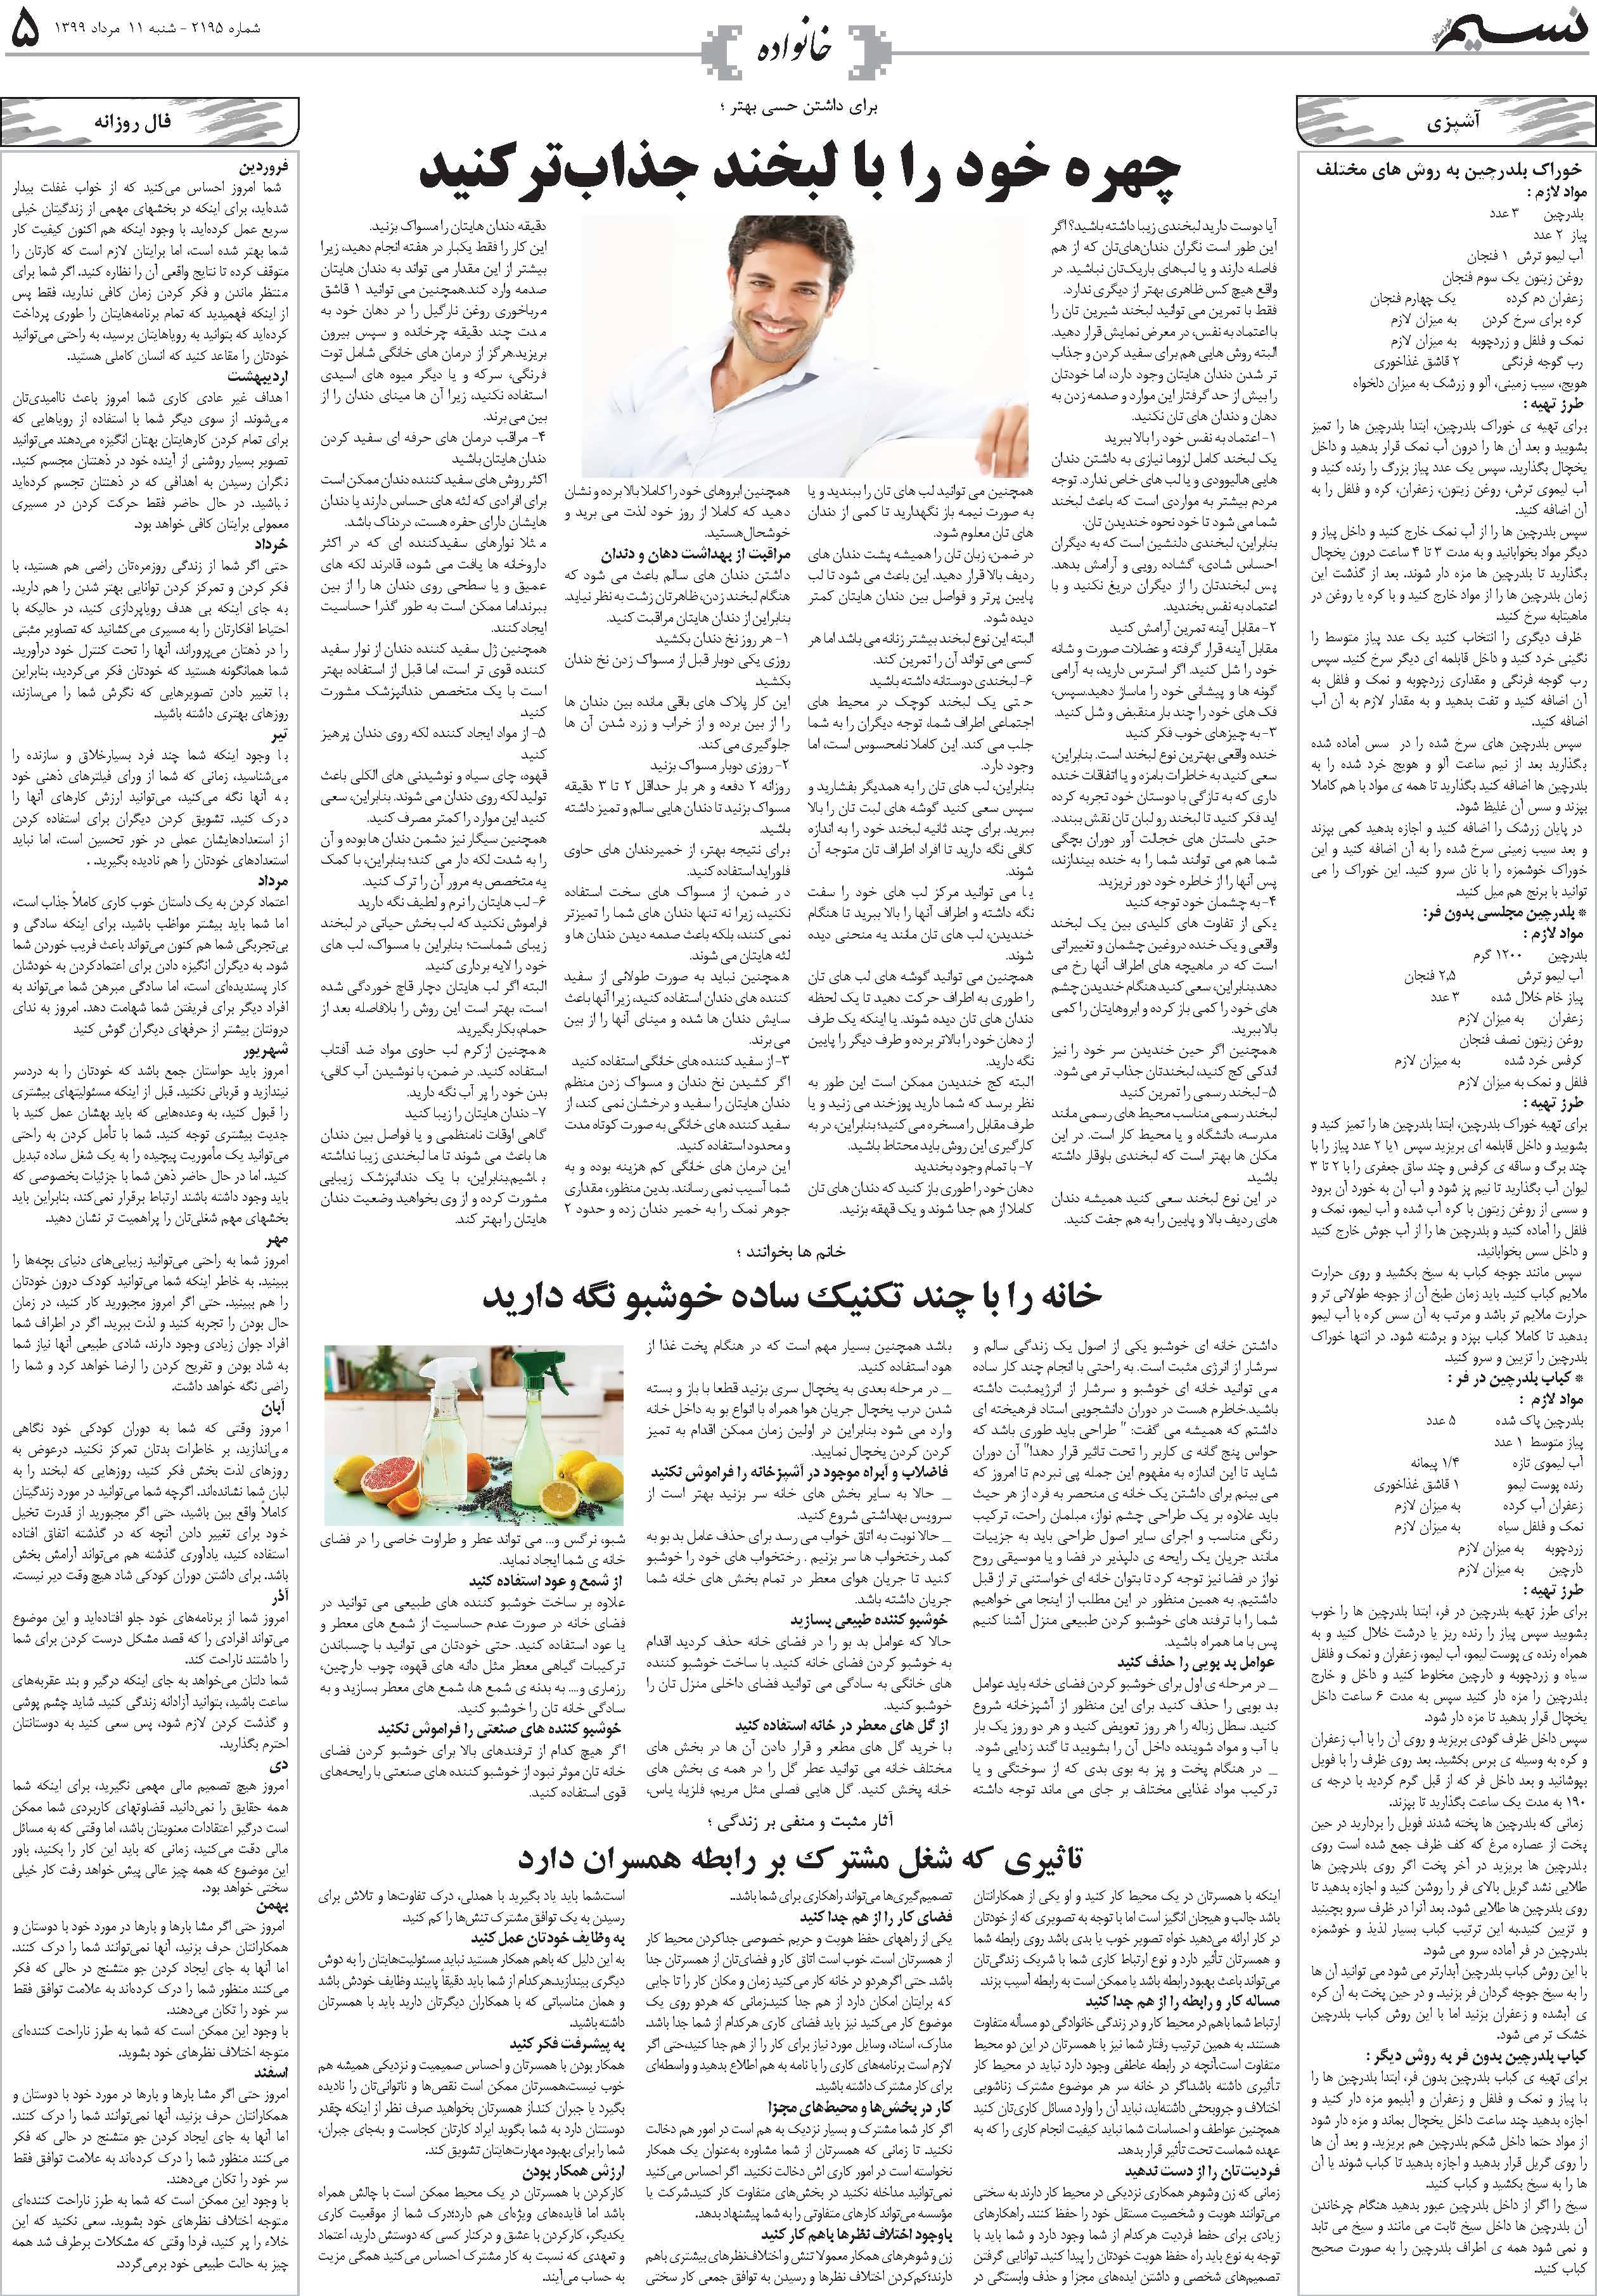 صفحه خانواده روزنامه نسیم شماره 2195